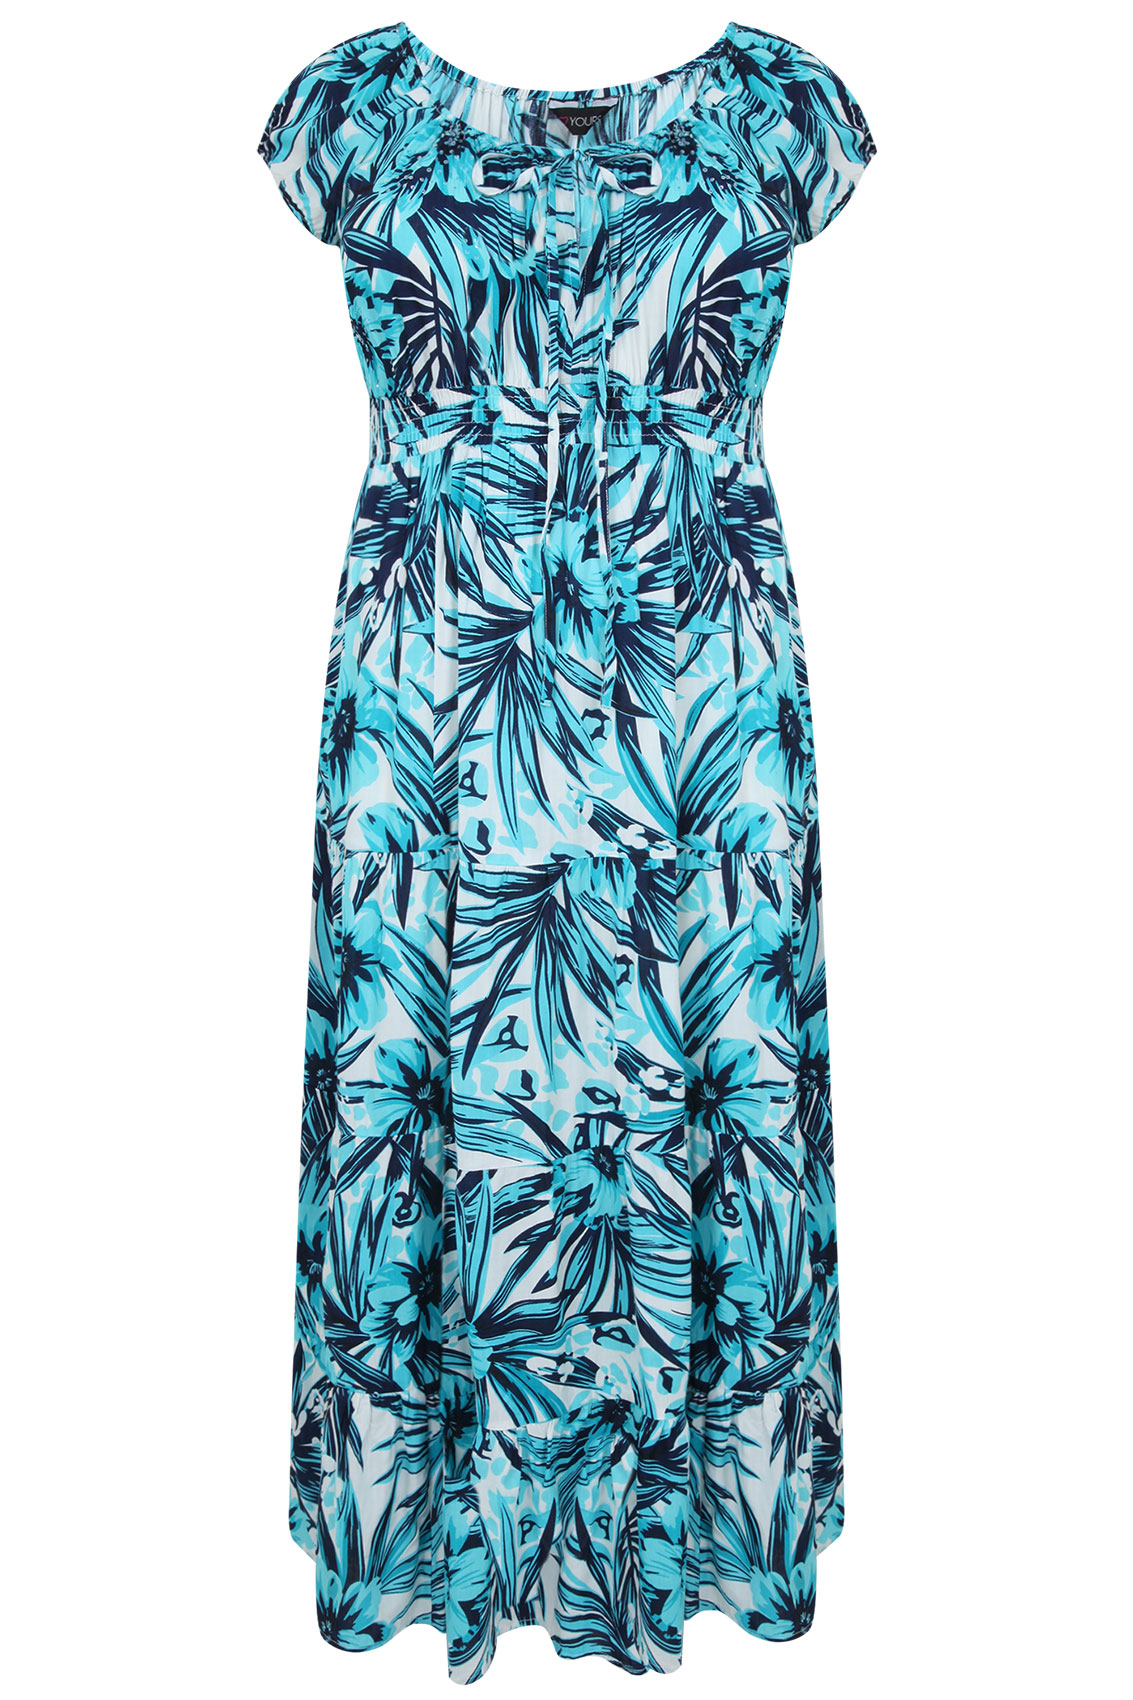 Turquoise & White Tropical Print Gypsy Maxi Dress plus size 14,16,18,20 ...